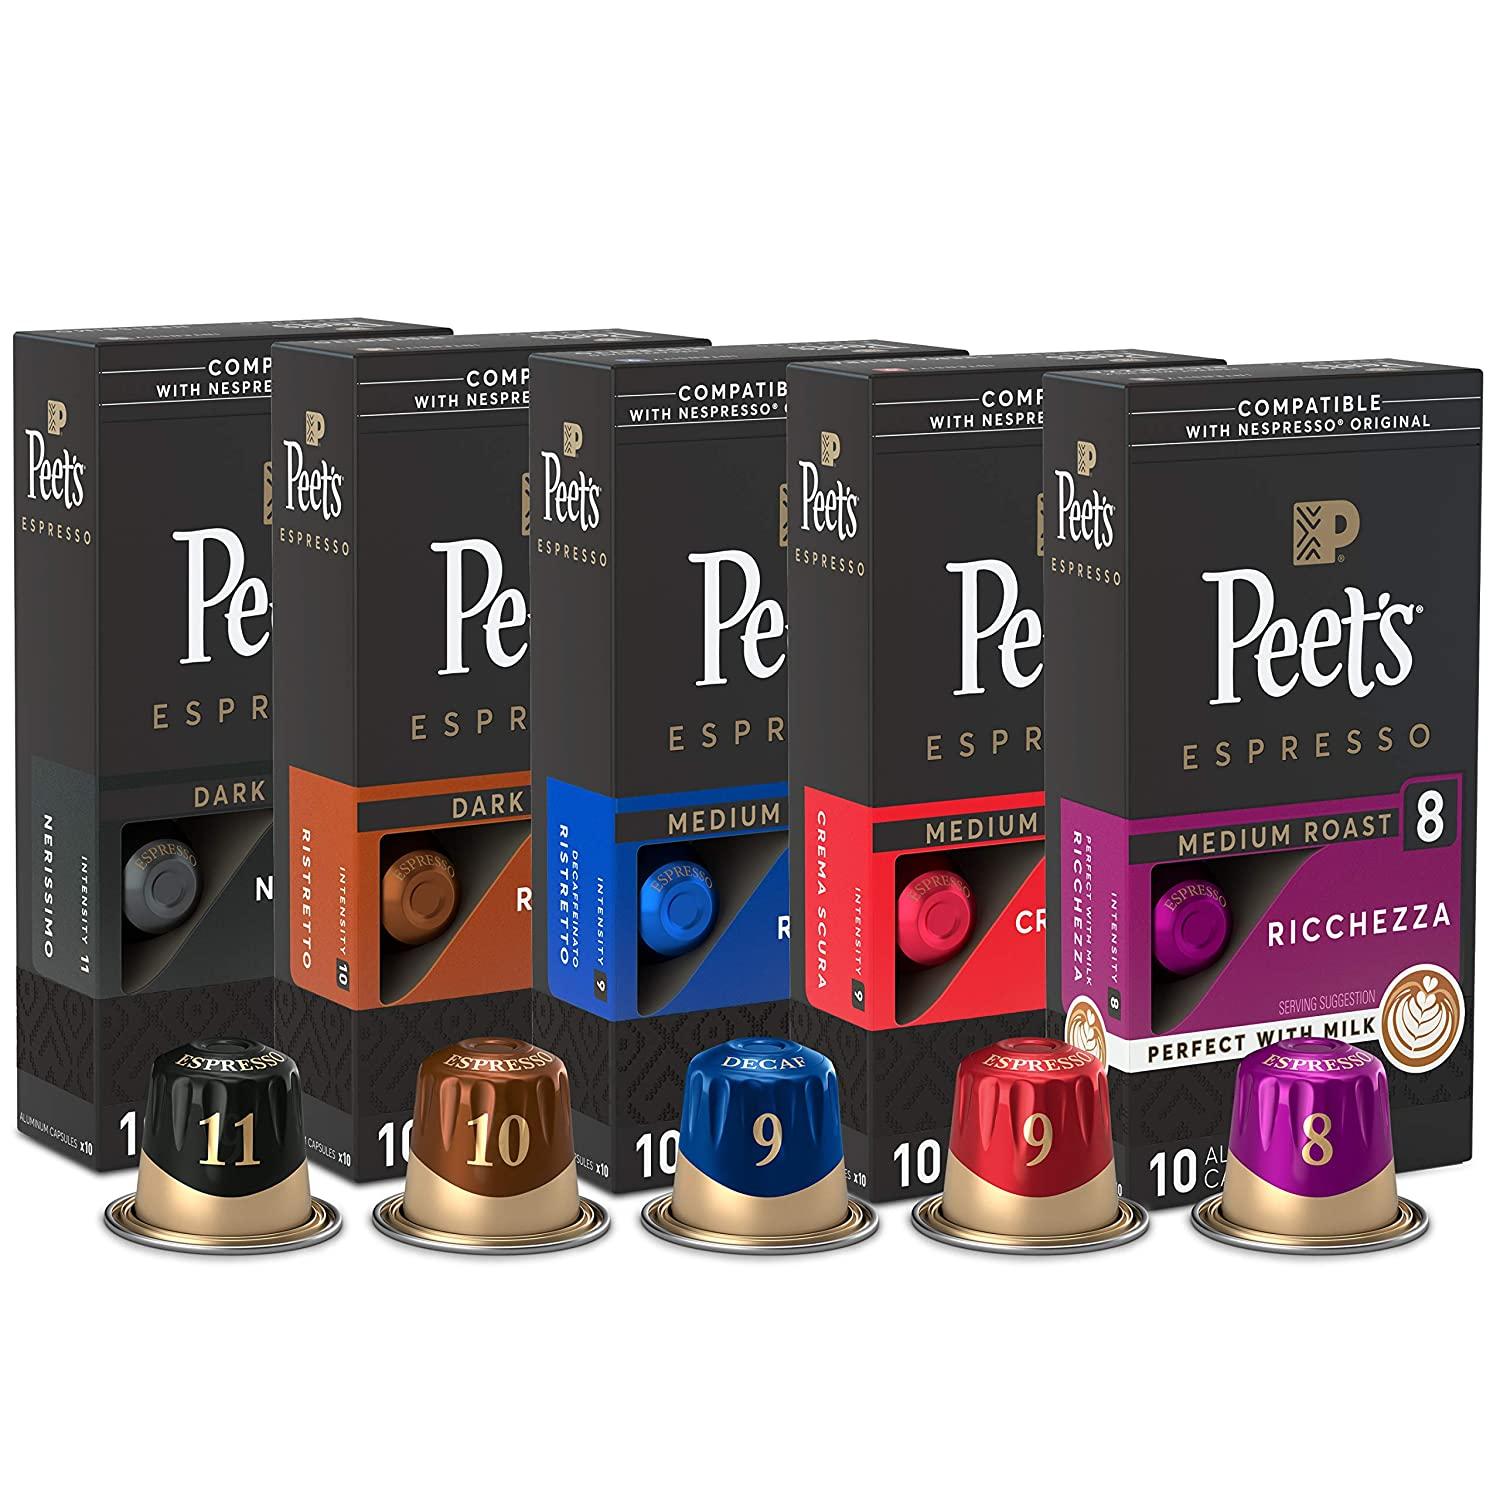 Nespresso Original Peets Coffee Espresso Capsules 50 Variety Pack for $26.86 Shipped